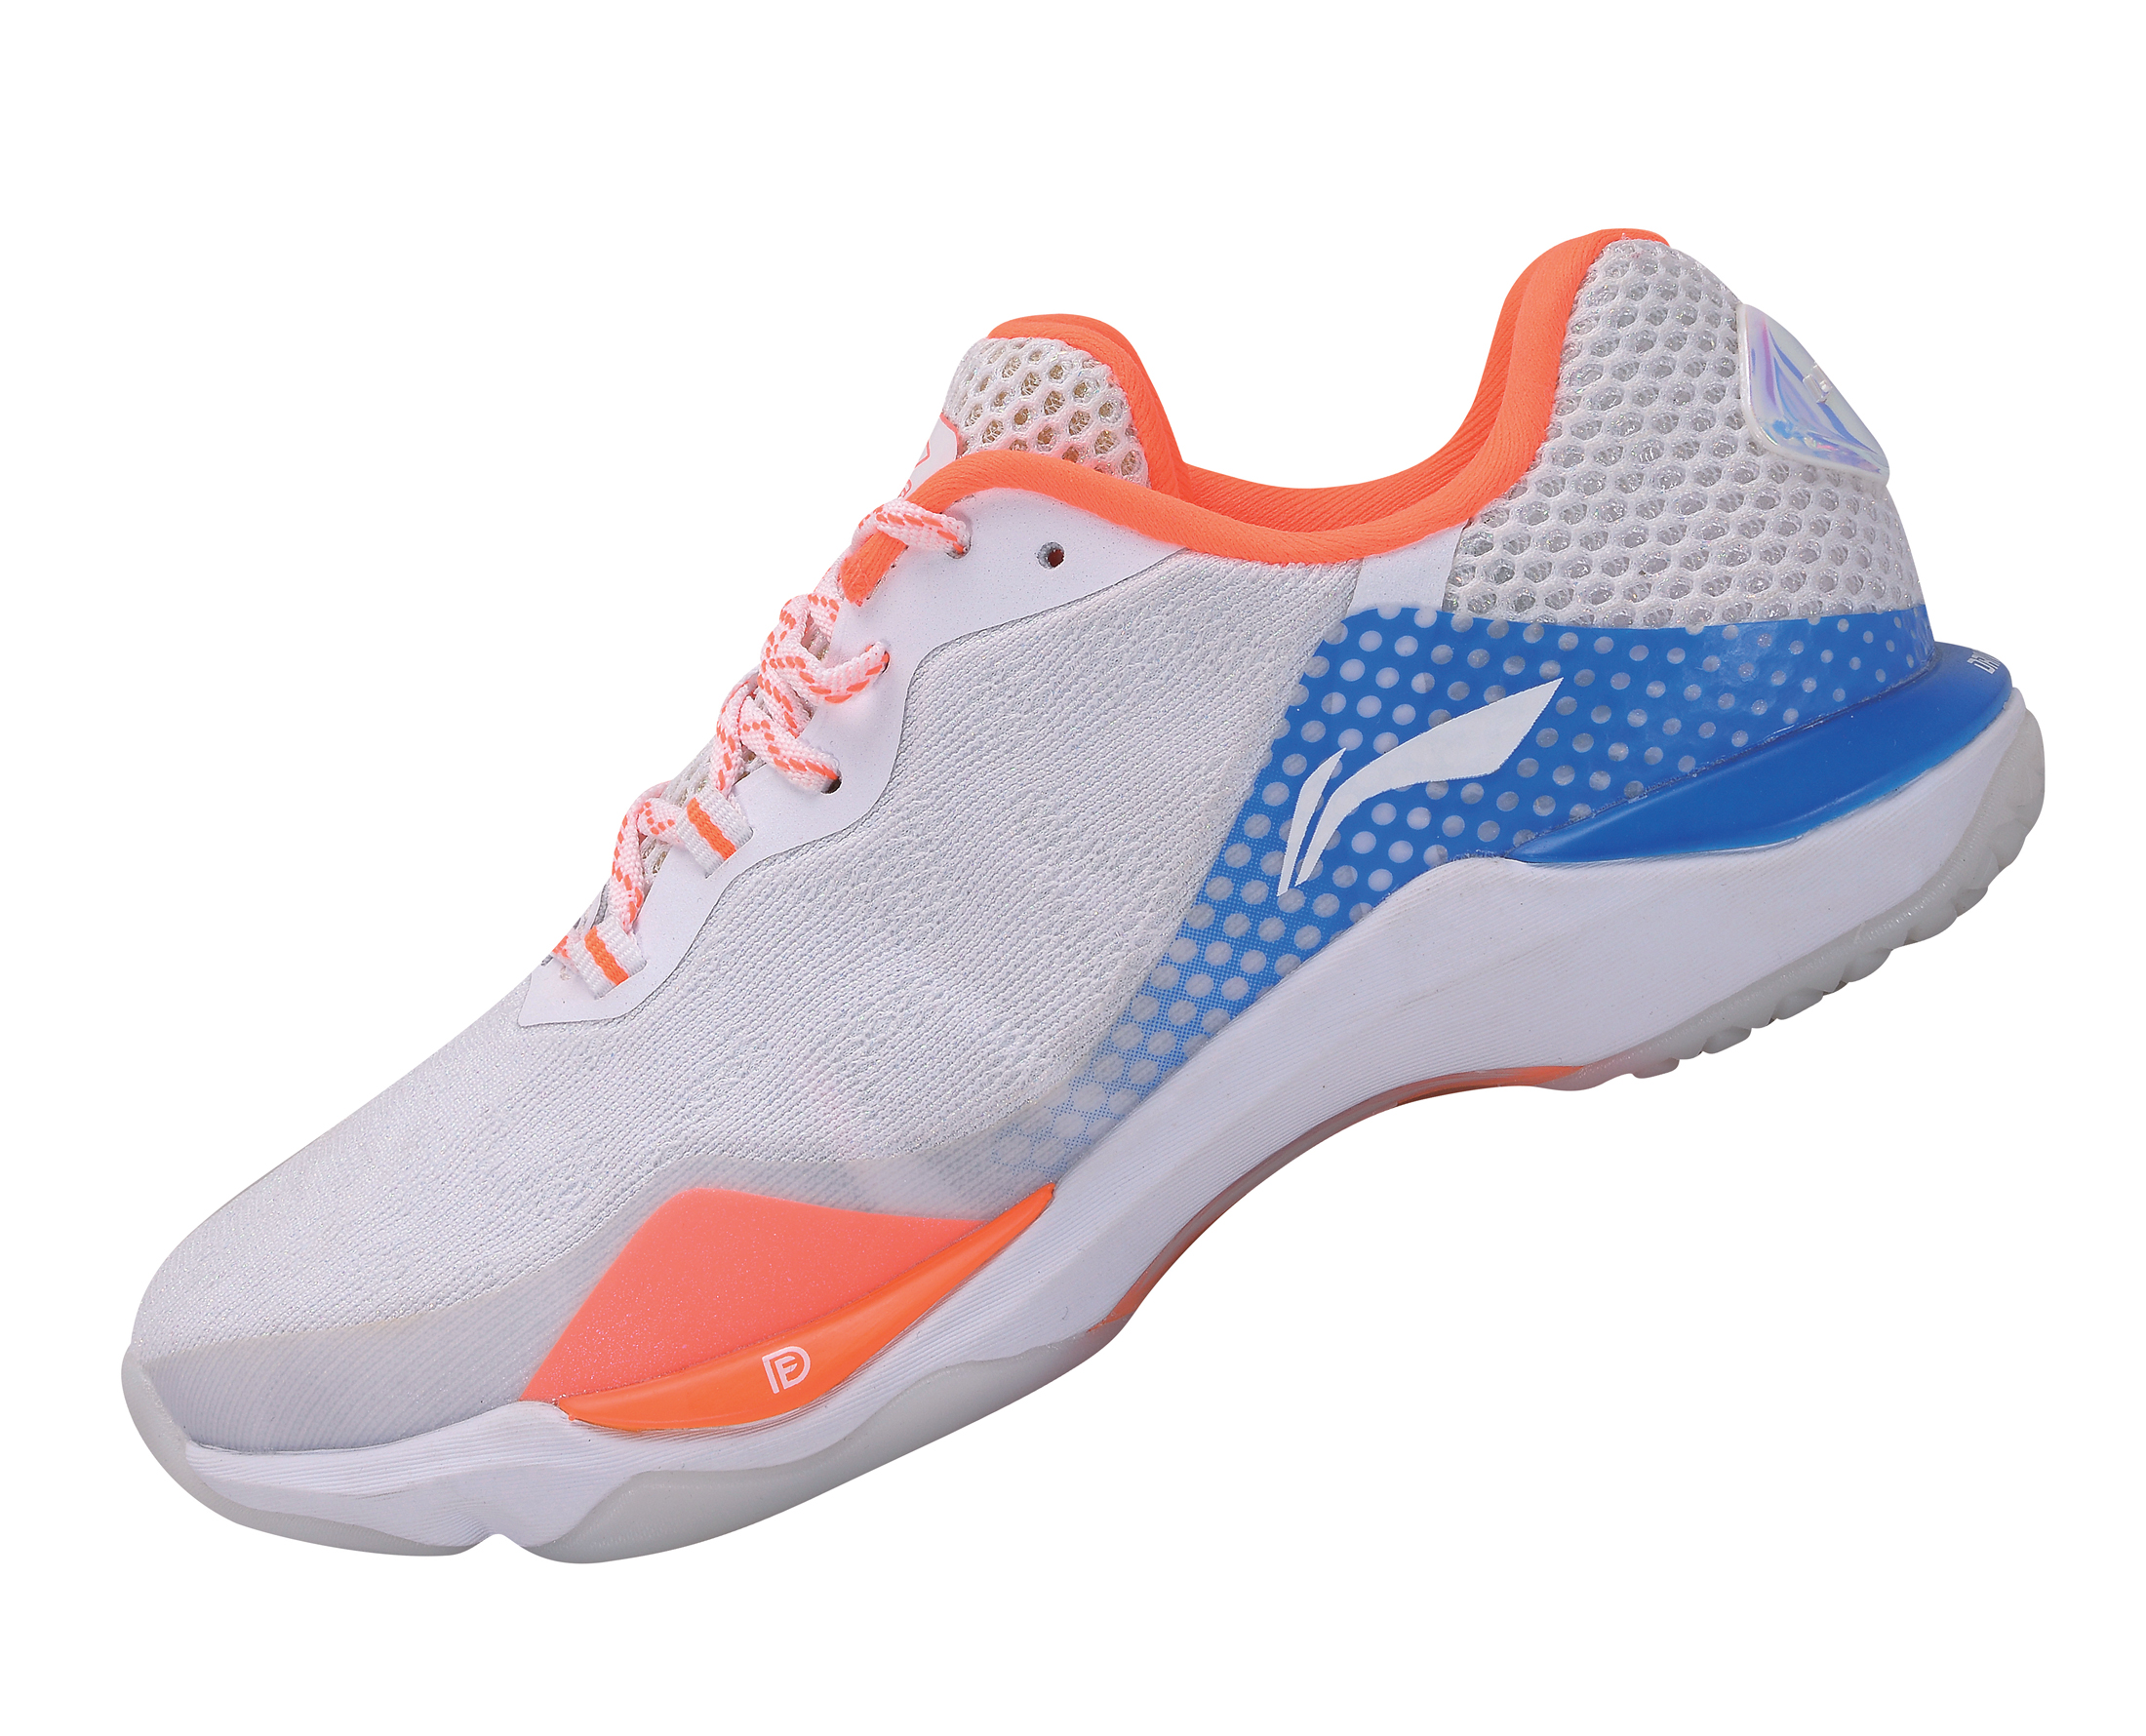 rubber sole shoes for badminton